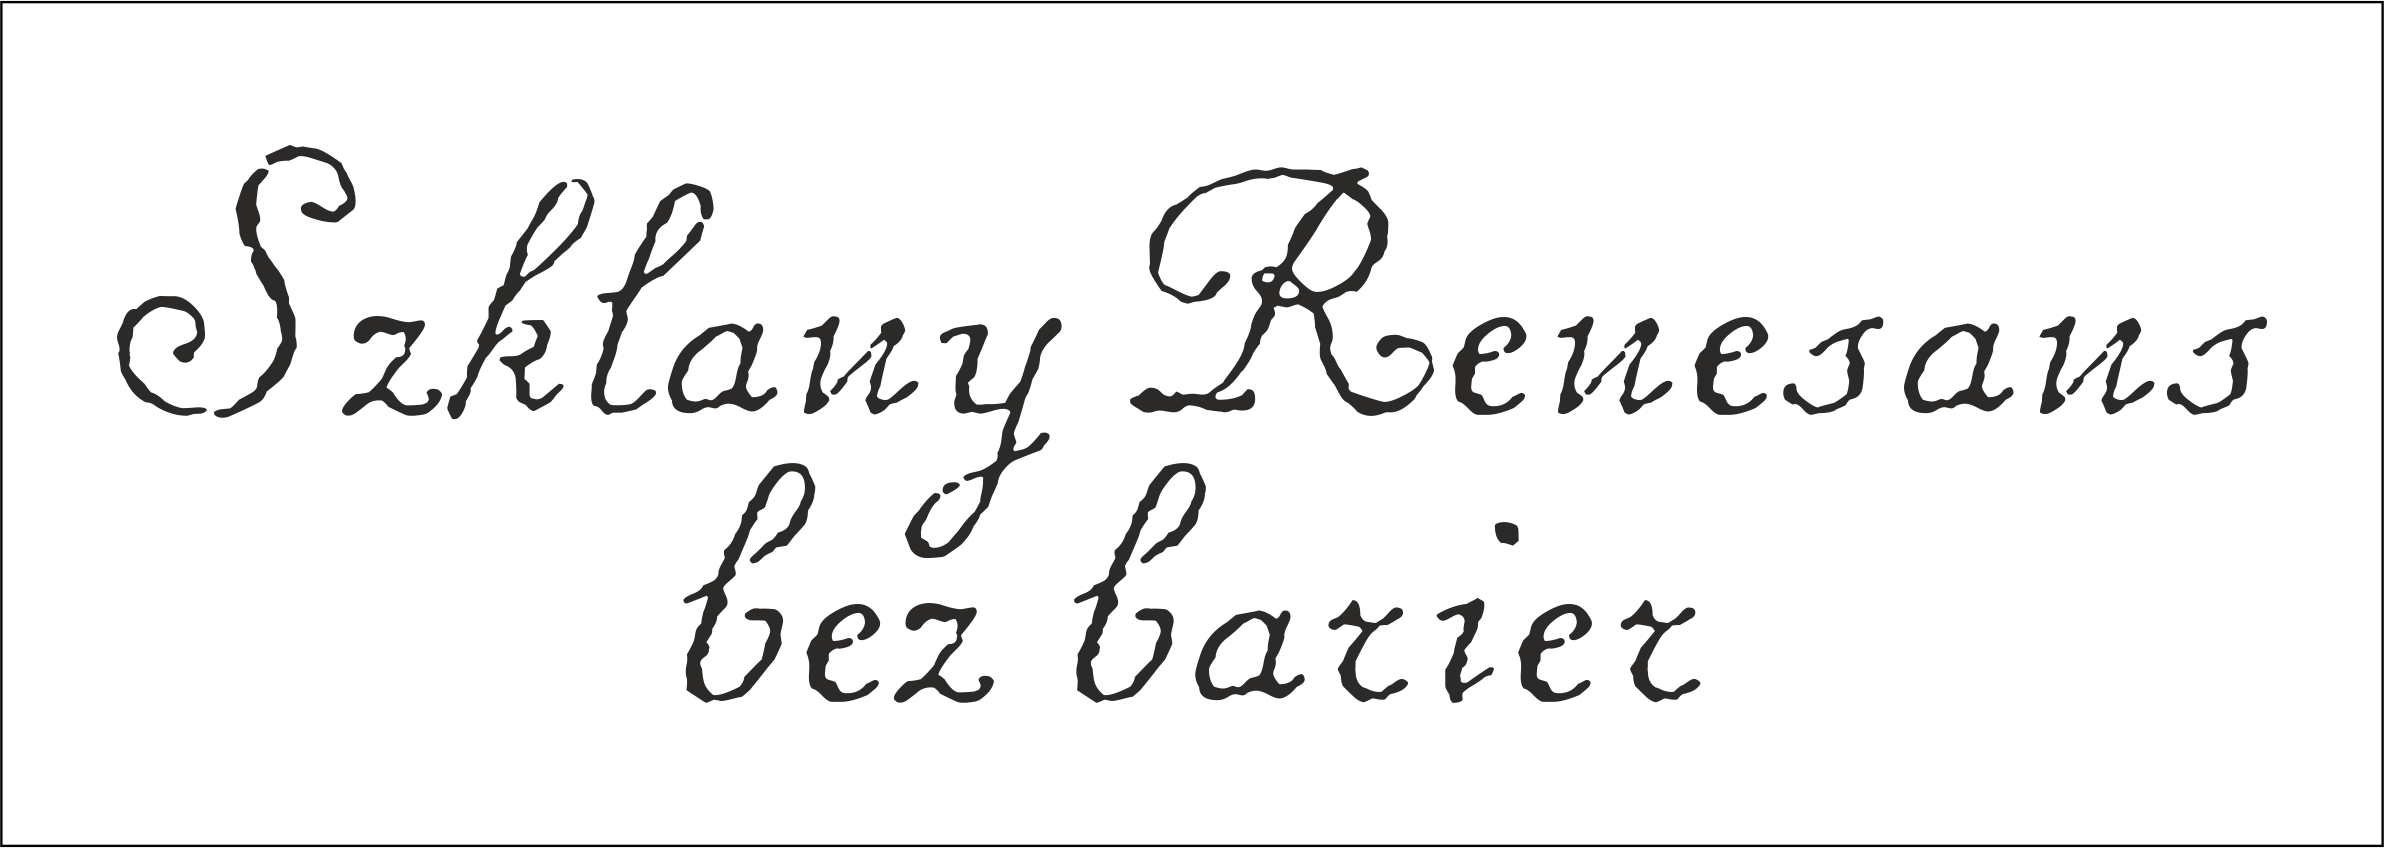 Szklany renesans bez barier - ozdobny, czarny napis na białym tle